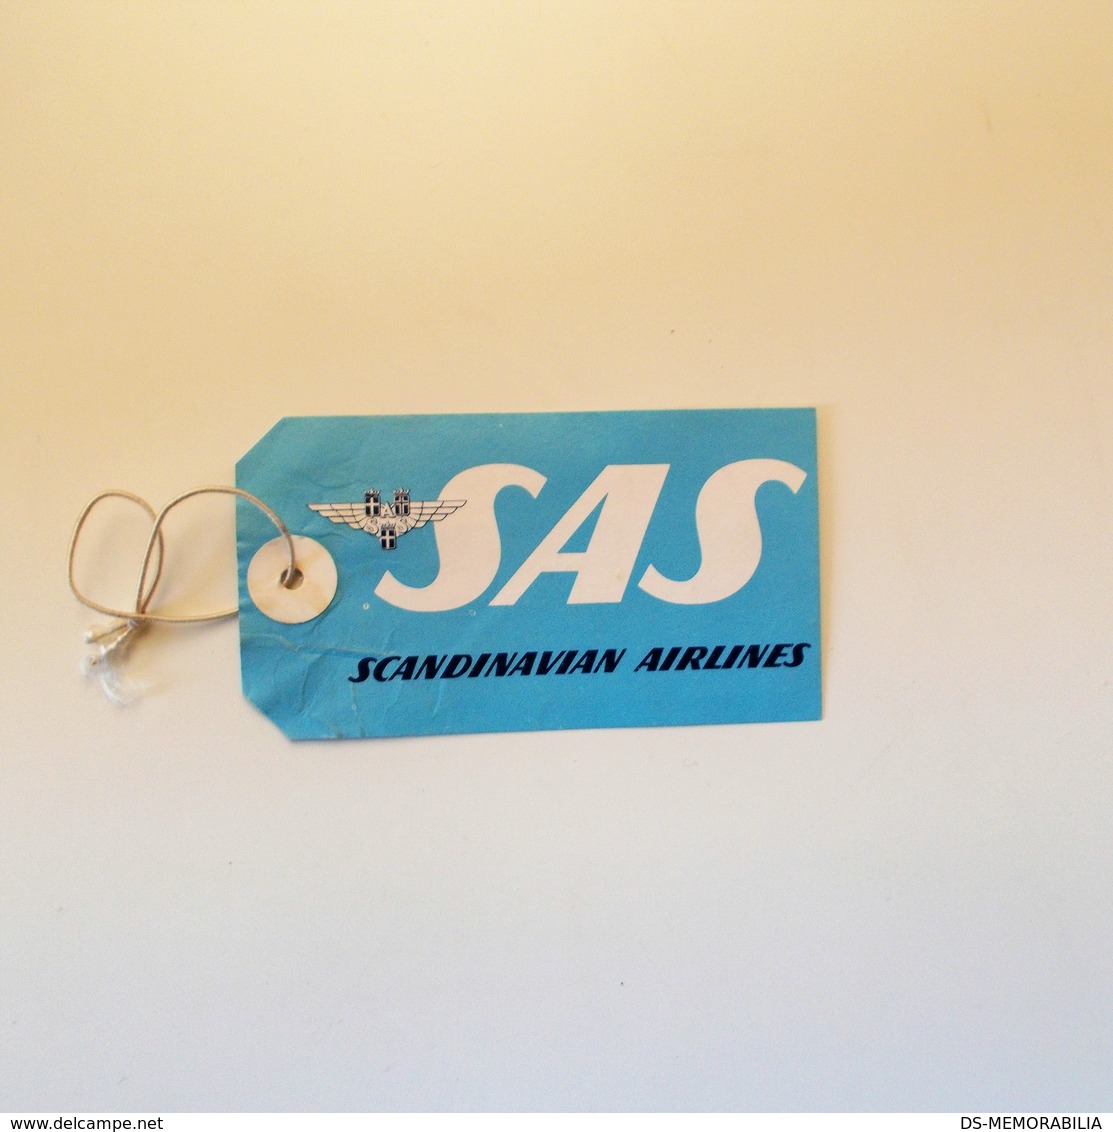 Vintage SAS Scandinavian Airlines Baggage Luggage Tag - Baggage Labels & Tags